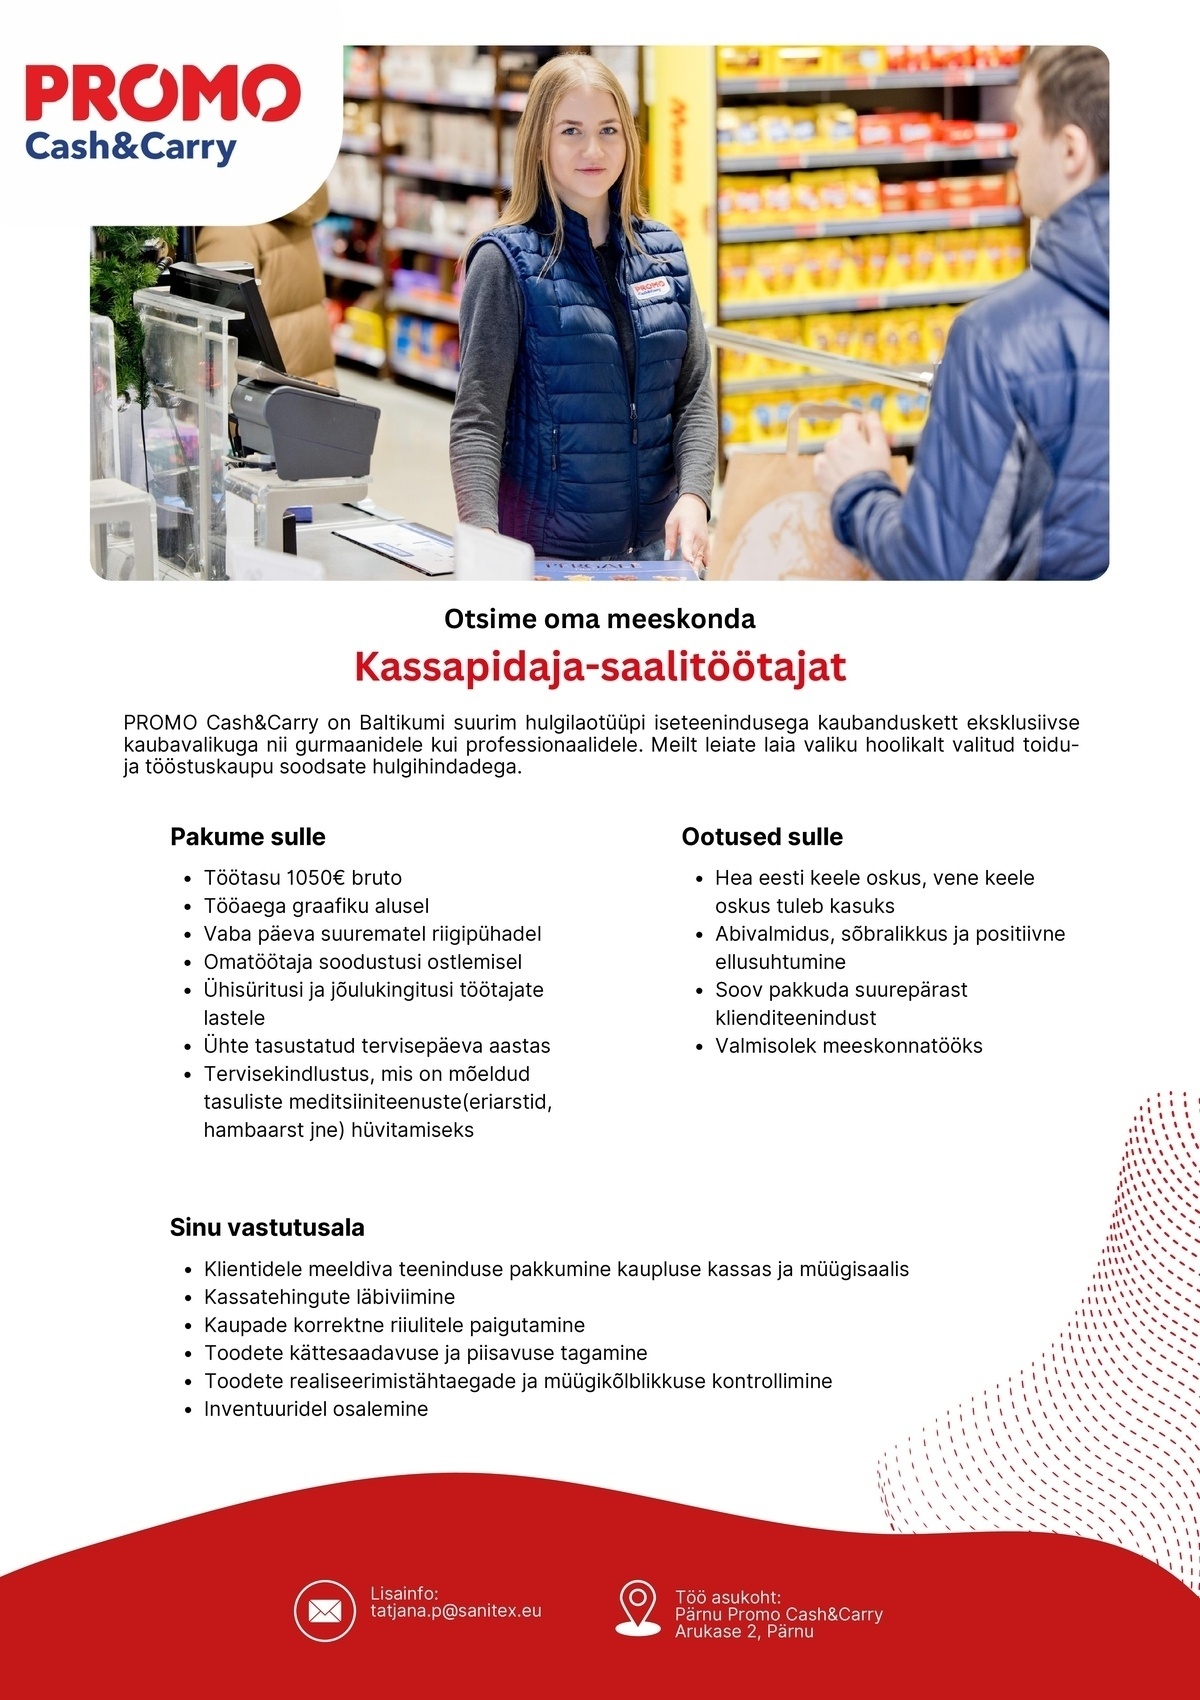 Sanitex OÜ Kassapidaja-saalitöötaja Pärnu Promo Cash&Carry hulgikaupluses